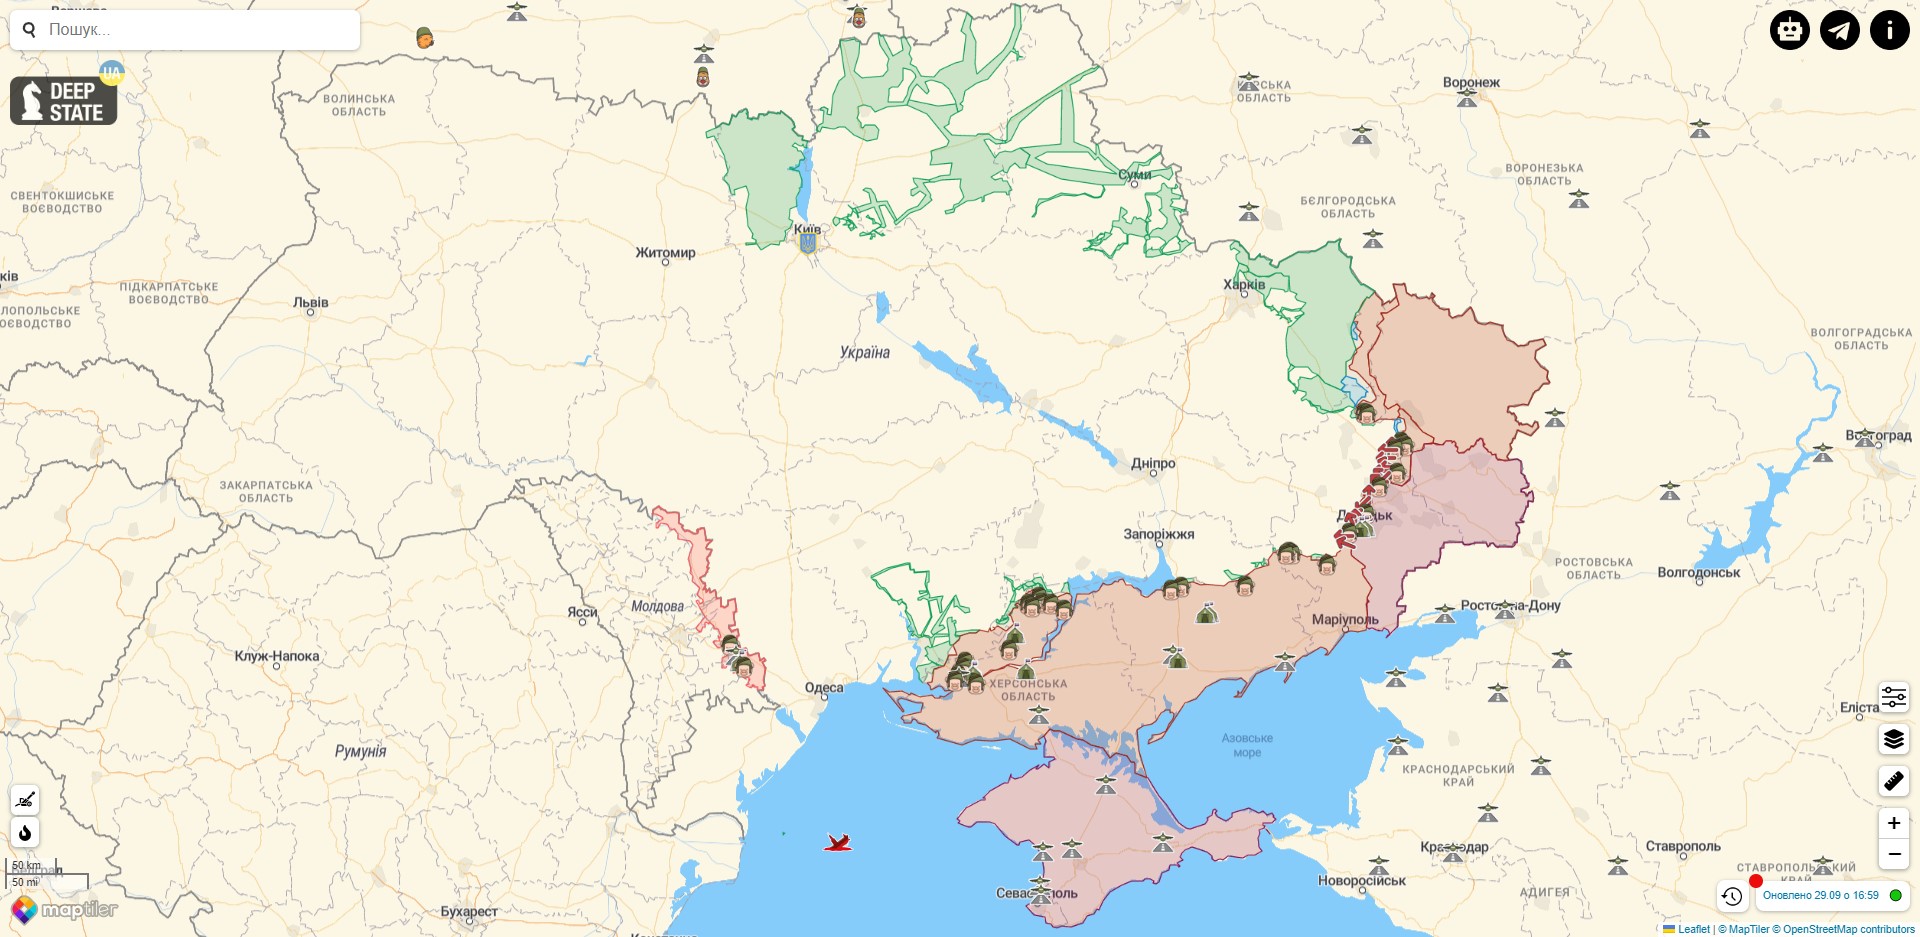 Боевые действия в Украине против РФ на 29 сентября